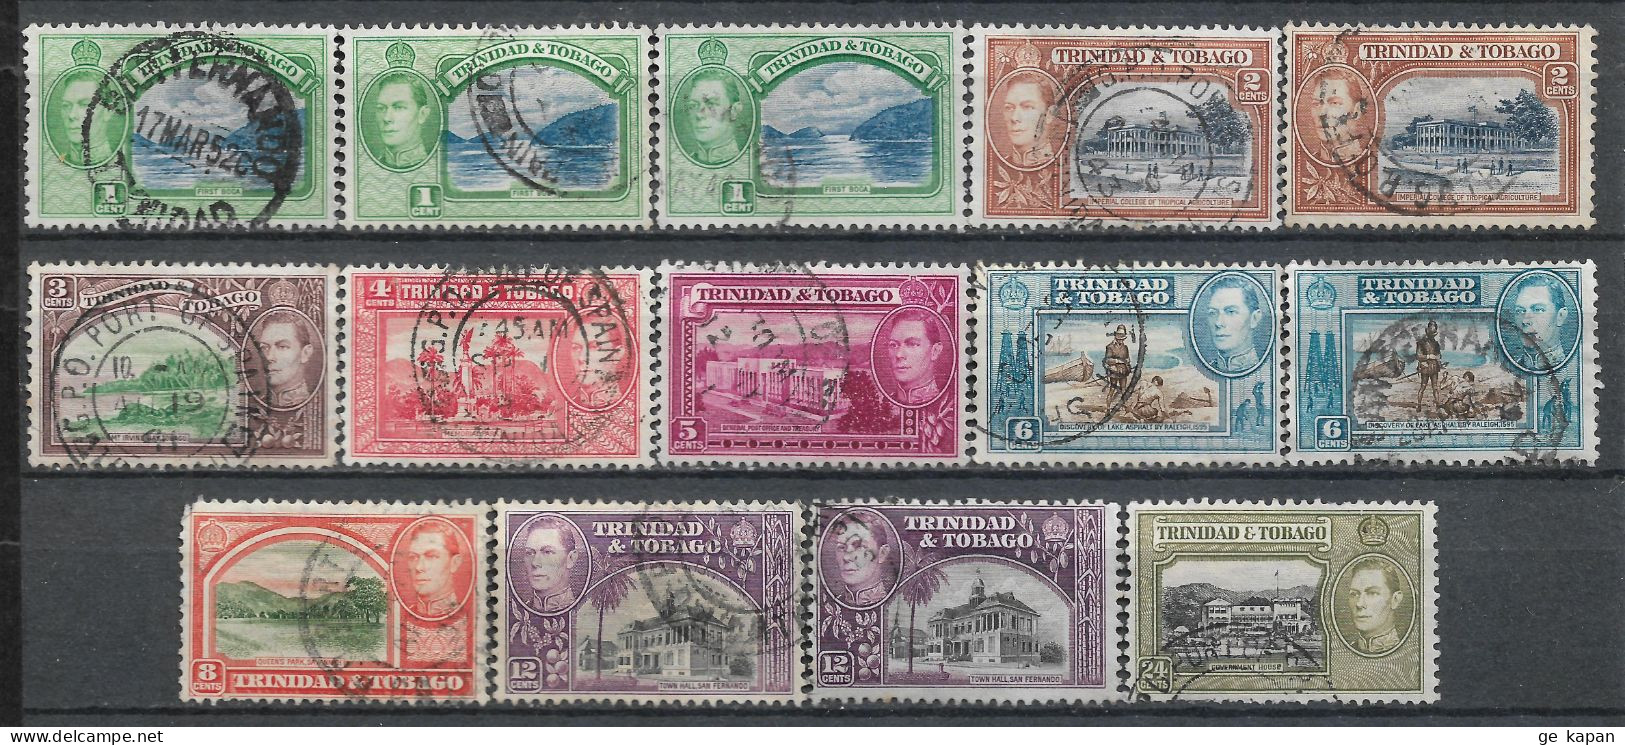 1938-1944 TRINIDAD & TOBAGO SET OF 14 USED STAMPS (Michel # 131,132,134,136-139,140a,140b,141) CV €5.90 - Trinité & Tobago (...-1961)